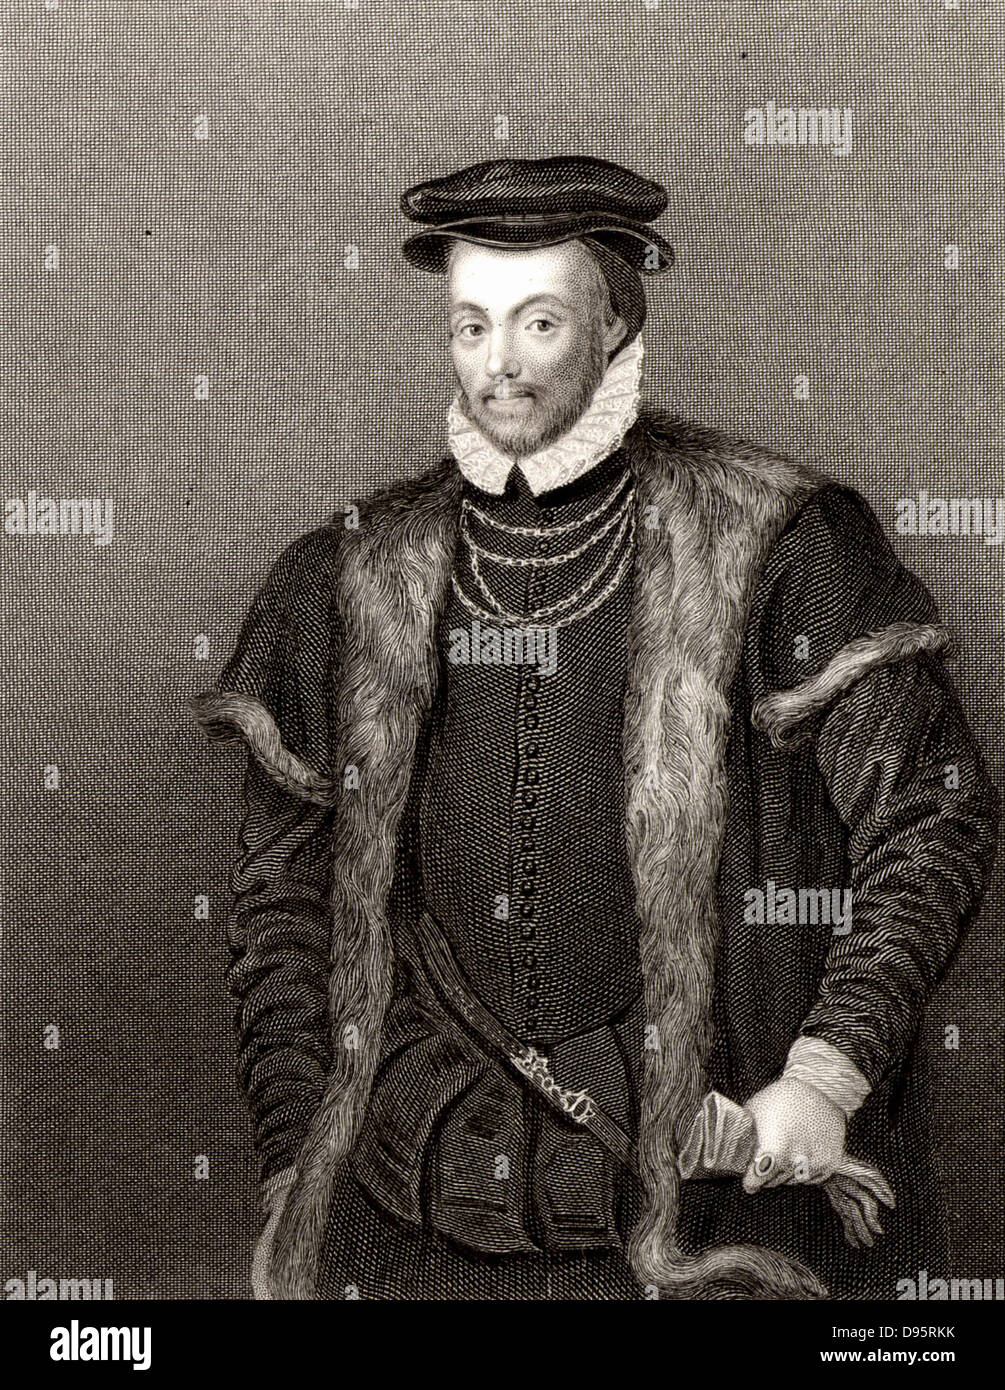 Edward North, 1. Baron North (1496?-1564) englische Staatsmann. Gravur. Stockfoto